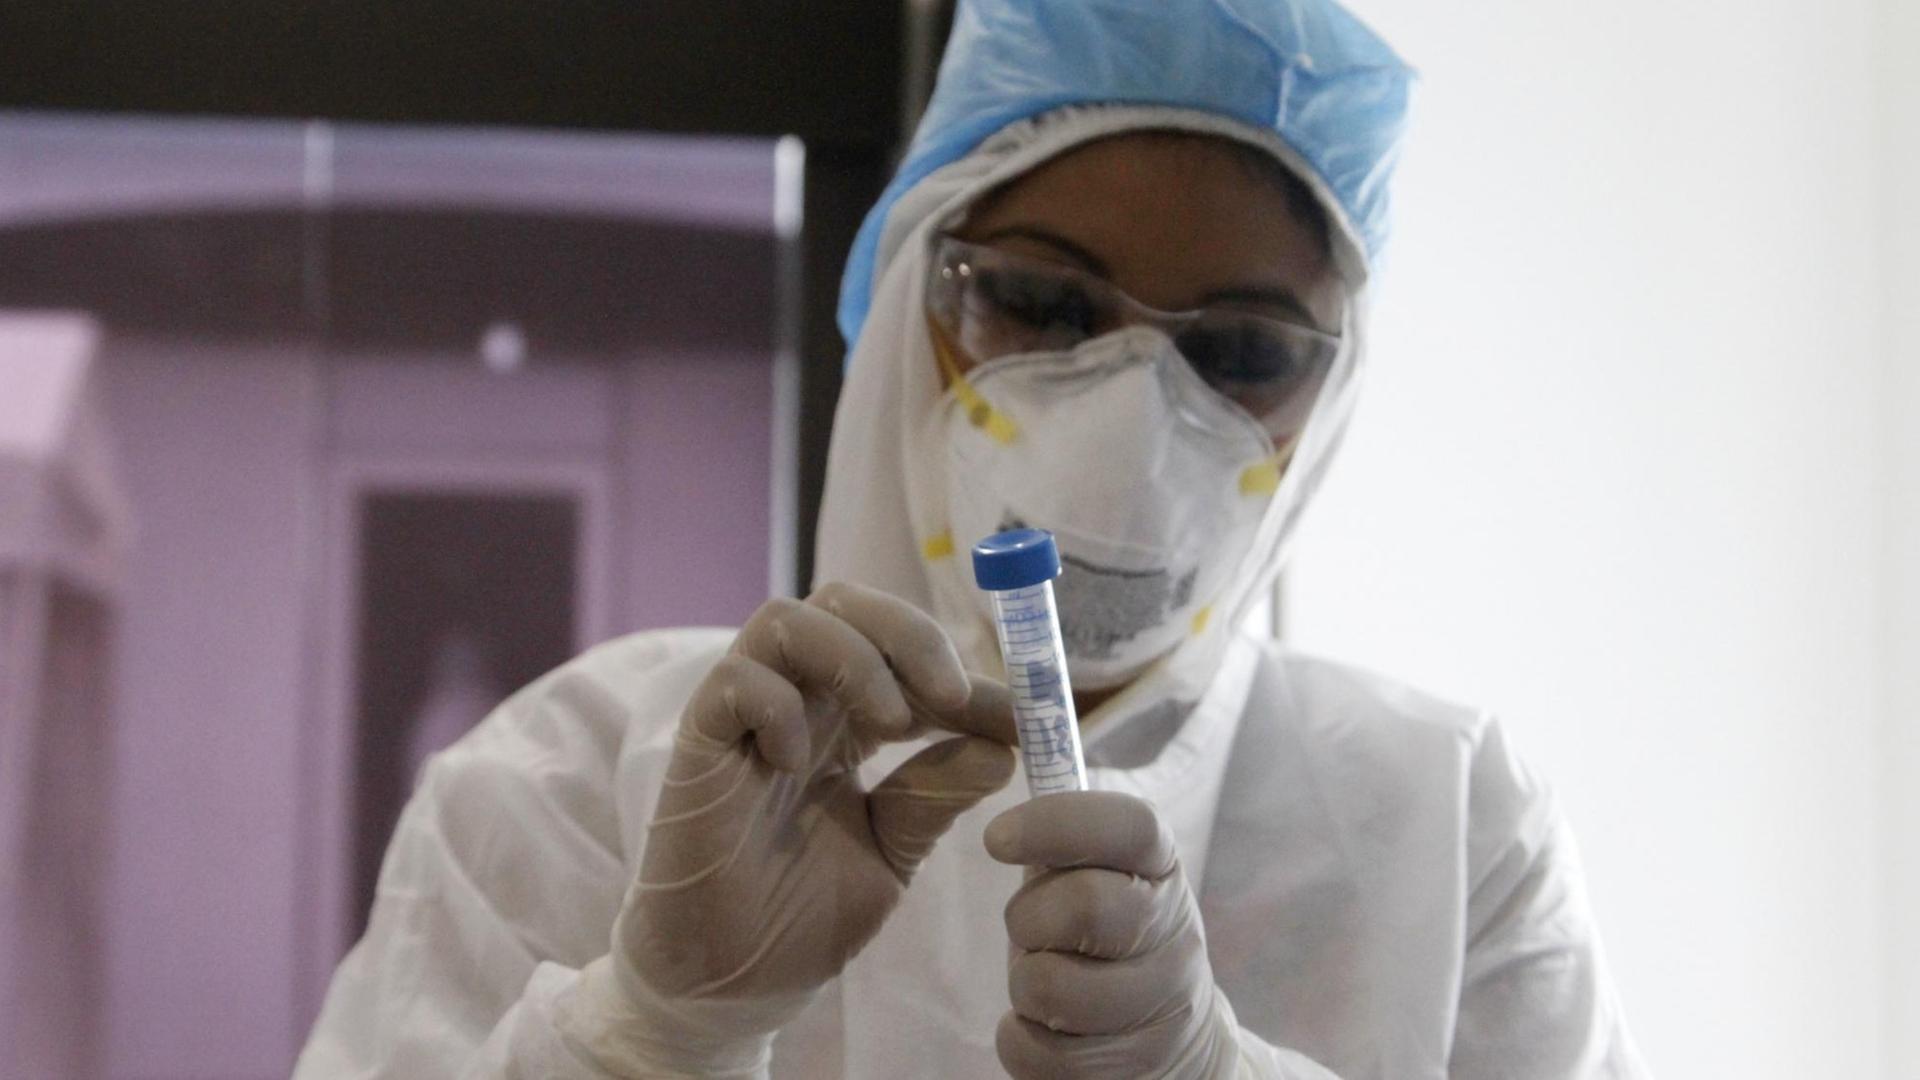 Biologin mit Schutzkleidung bei einem COVID-19-Test im Labor